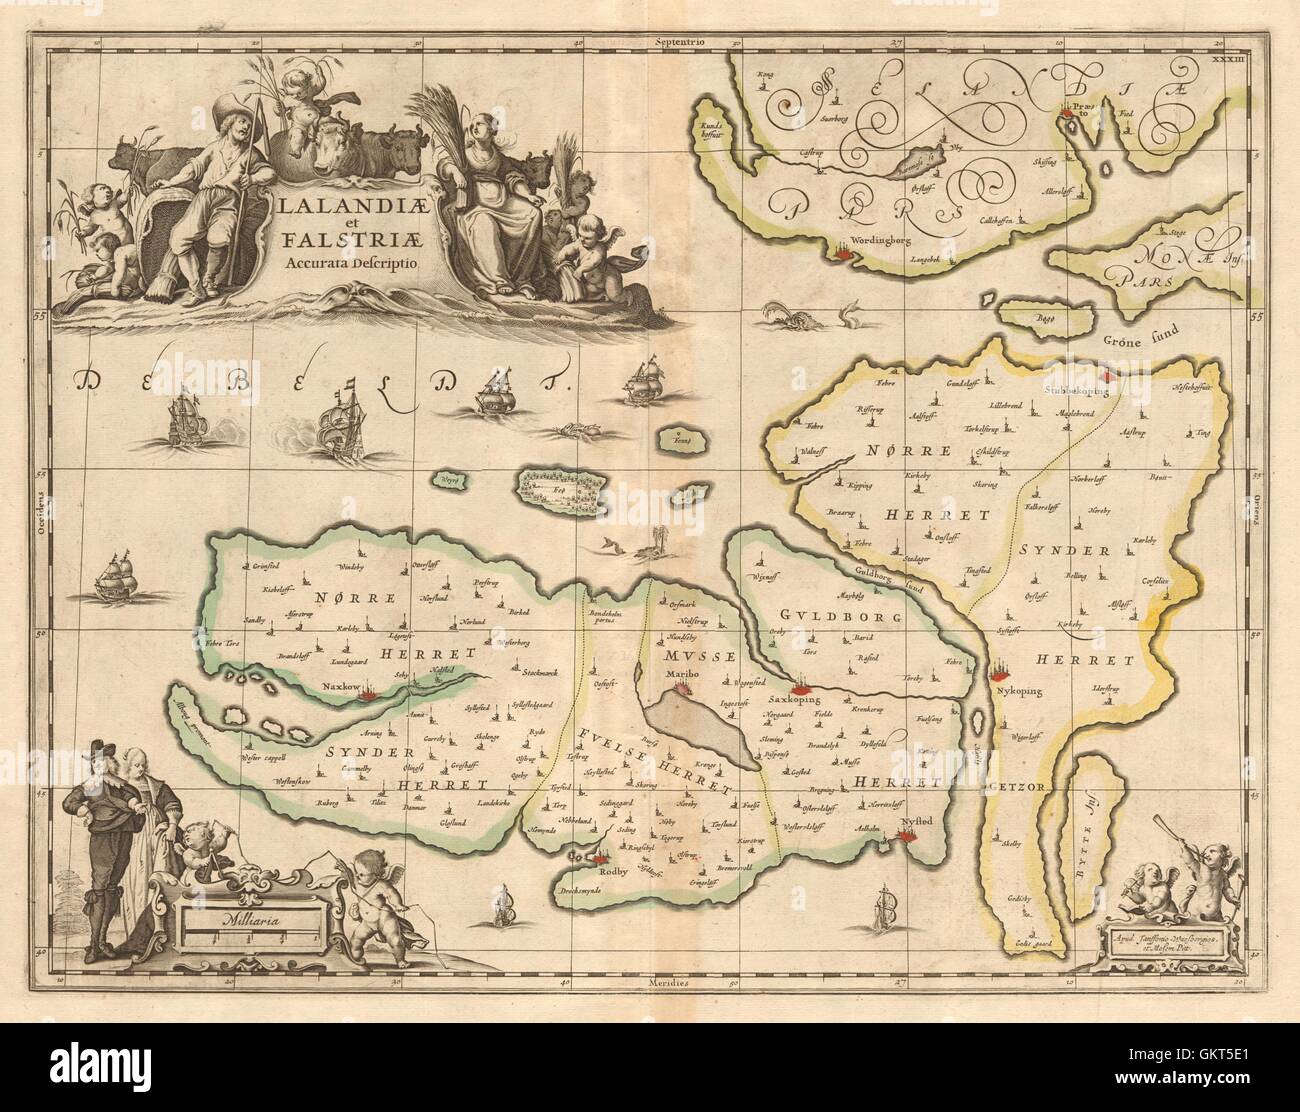 'Lalandiae et Falstriae'. Lolland & Falster. Denmark. JANSSONIUS, 1680 old map Stock Photo